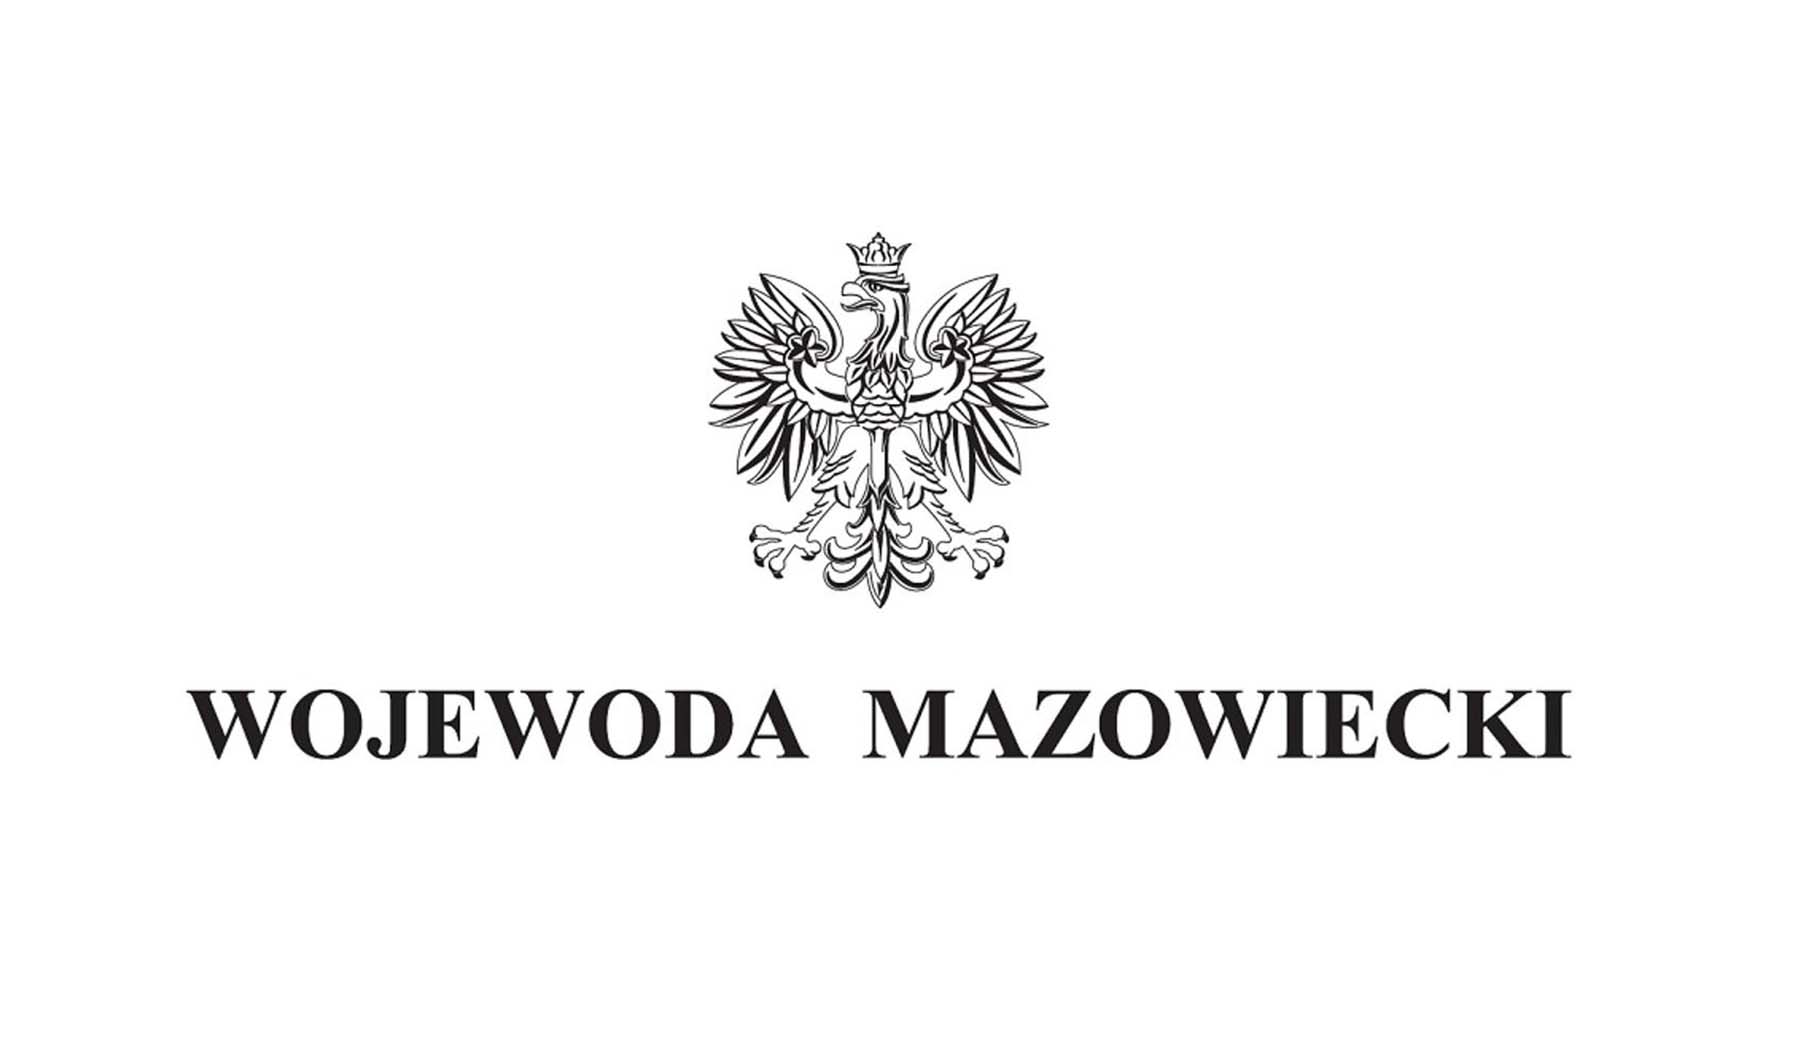 Działania Wojewody Mazowieckiego w związku z zamknięciem centrum tranzytowego dla uchodźców z Ukrainy prowadzonego przez NRC przy Dworcu Wschodnim w Warszawie